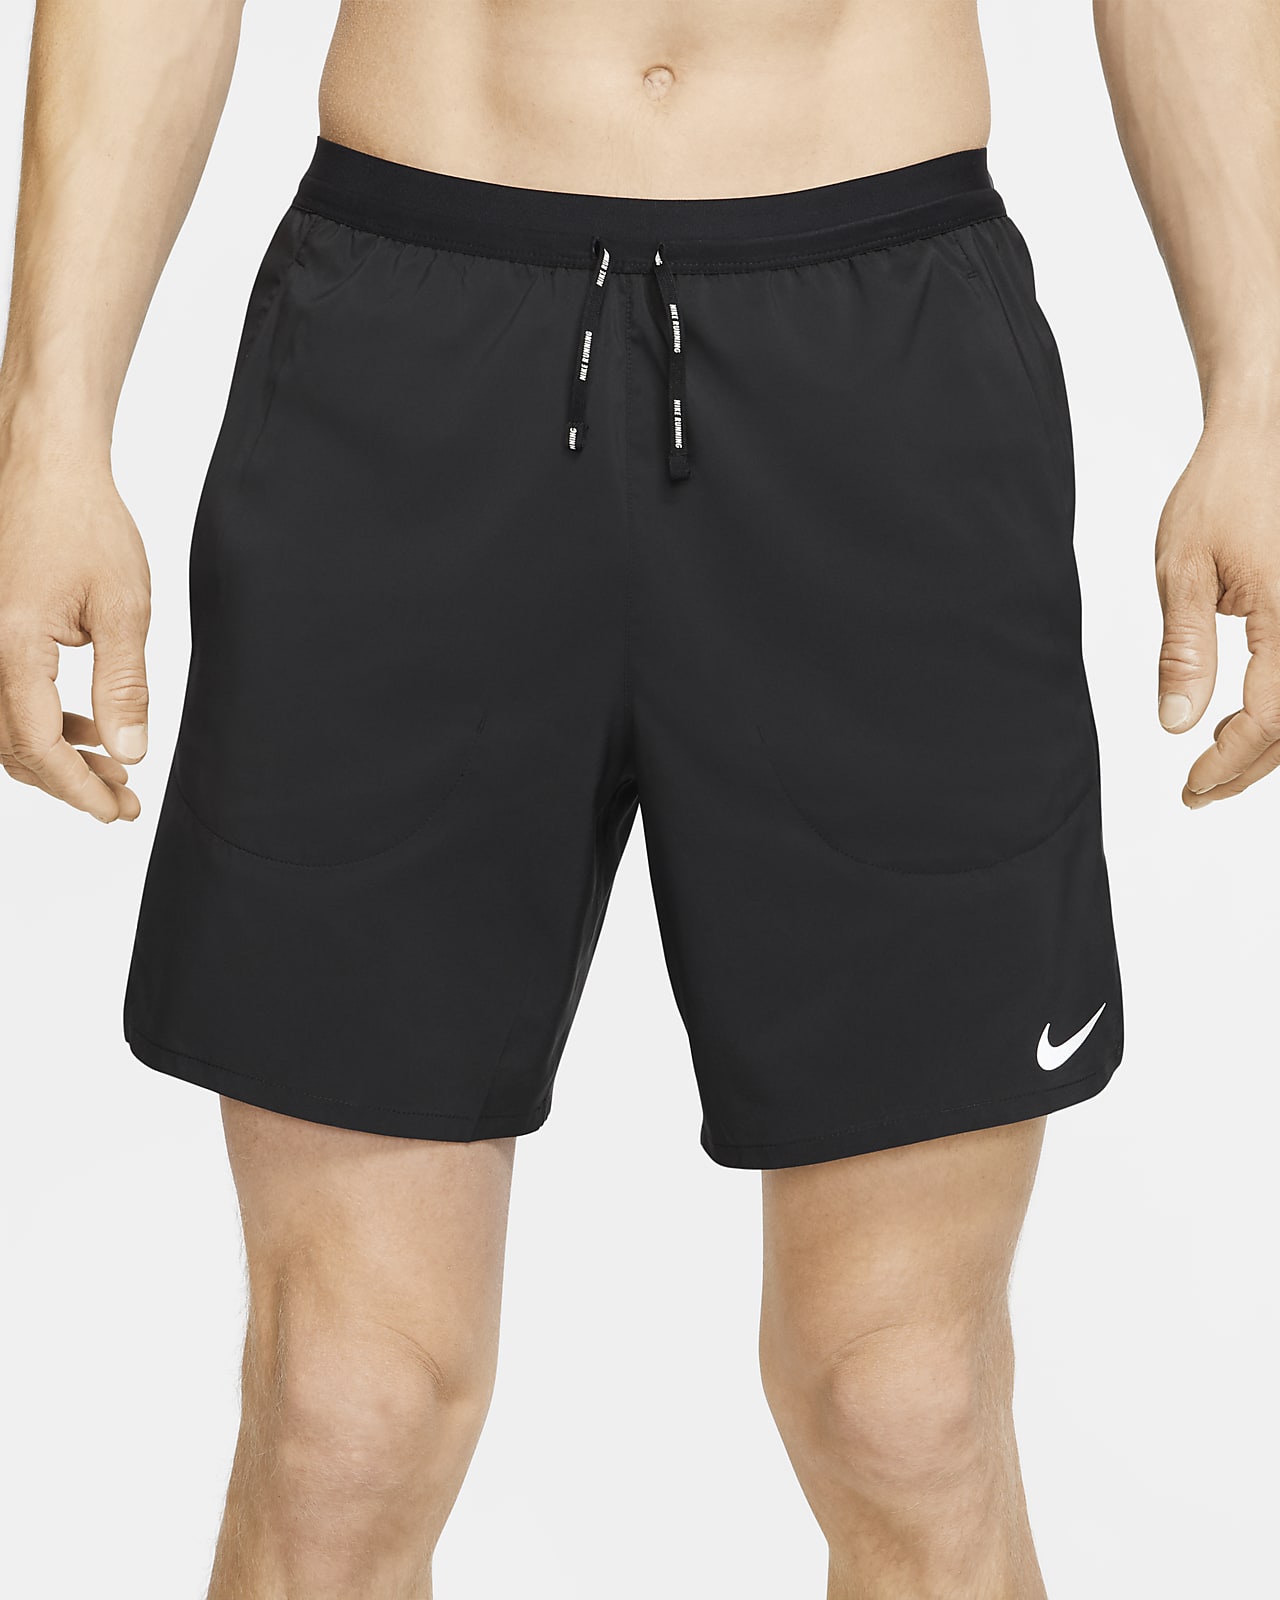 nike running shorts men's 7 inch